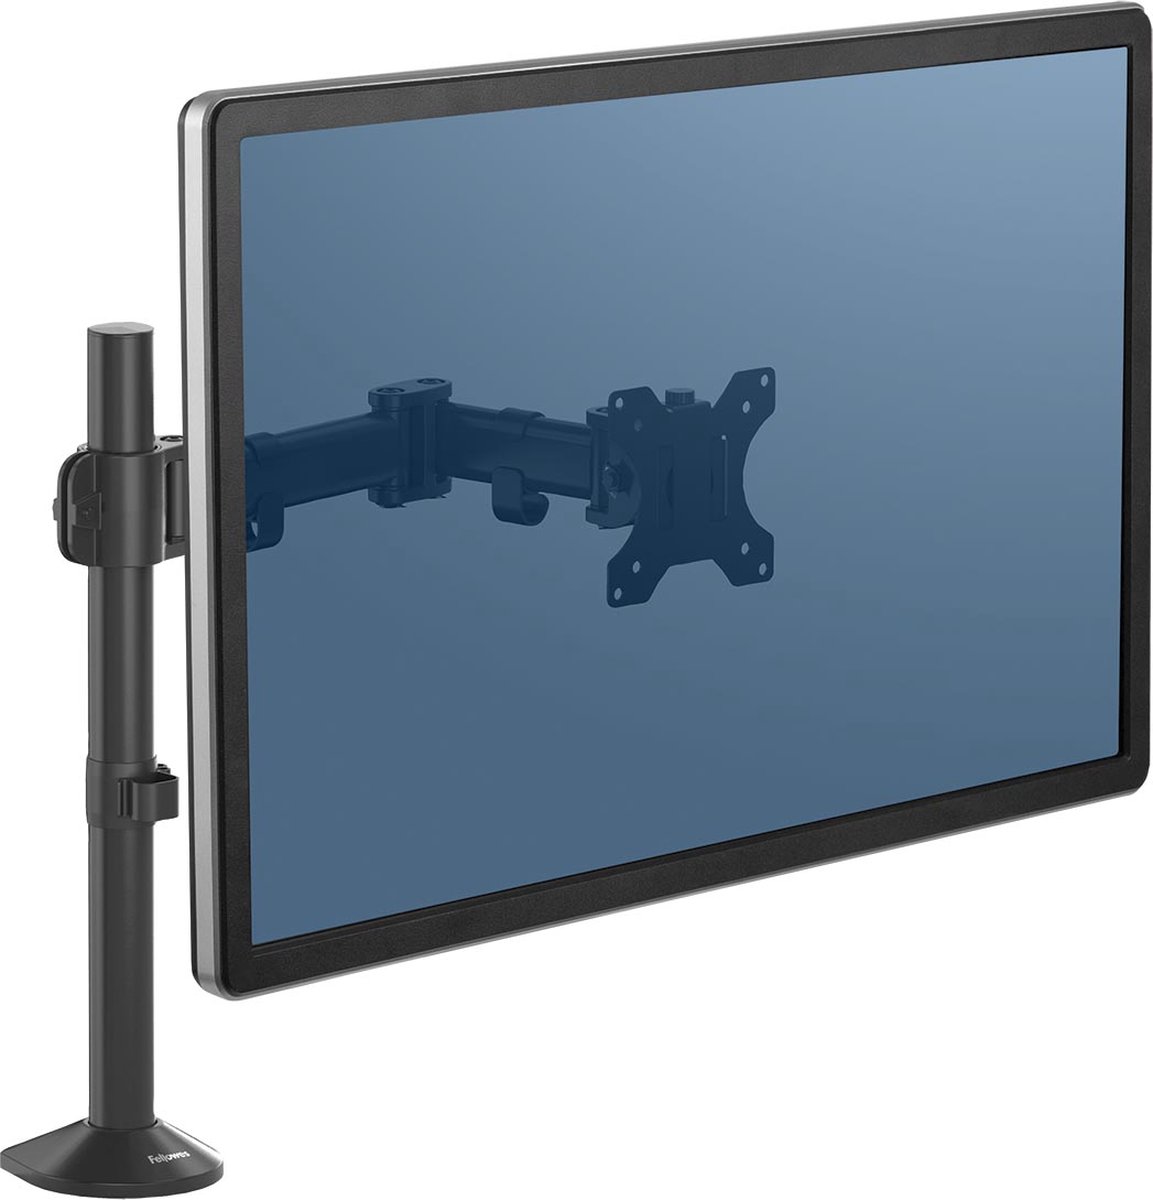 Fellowes Reflex monitor arm - enkel 1 scherm - 32 inch - klem - zwart